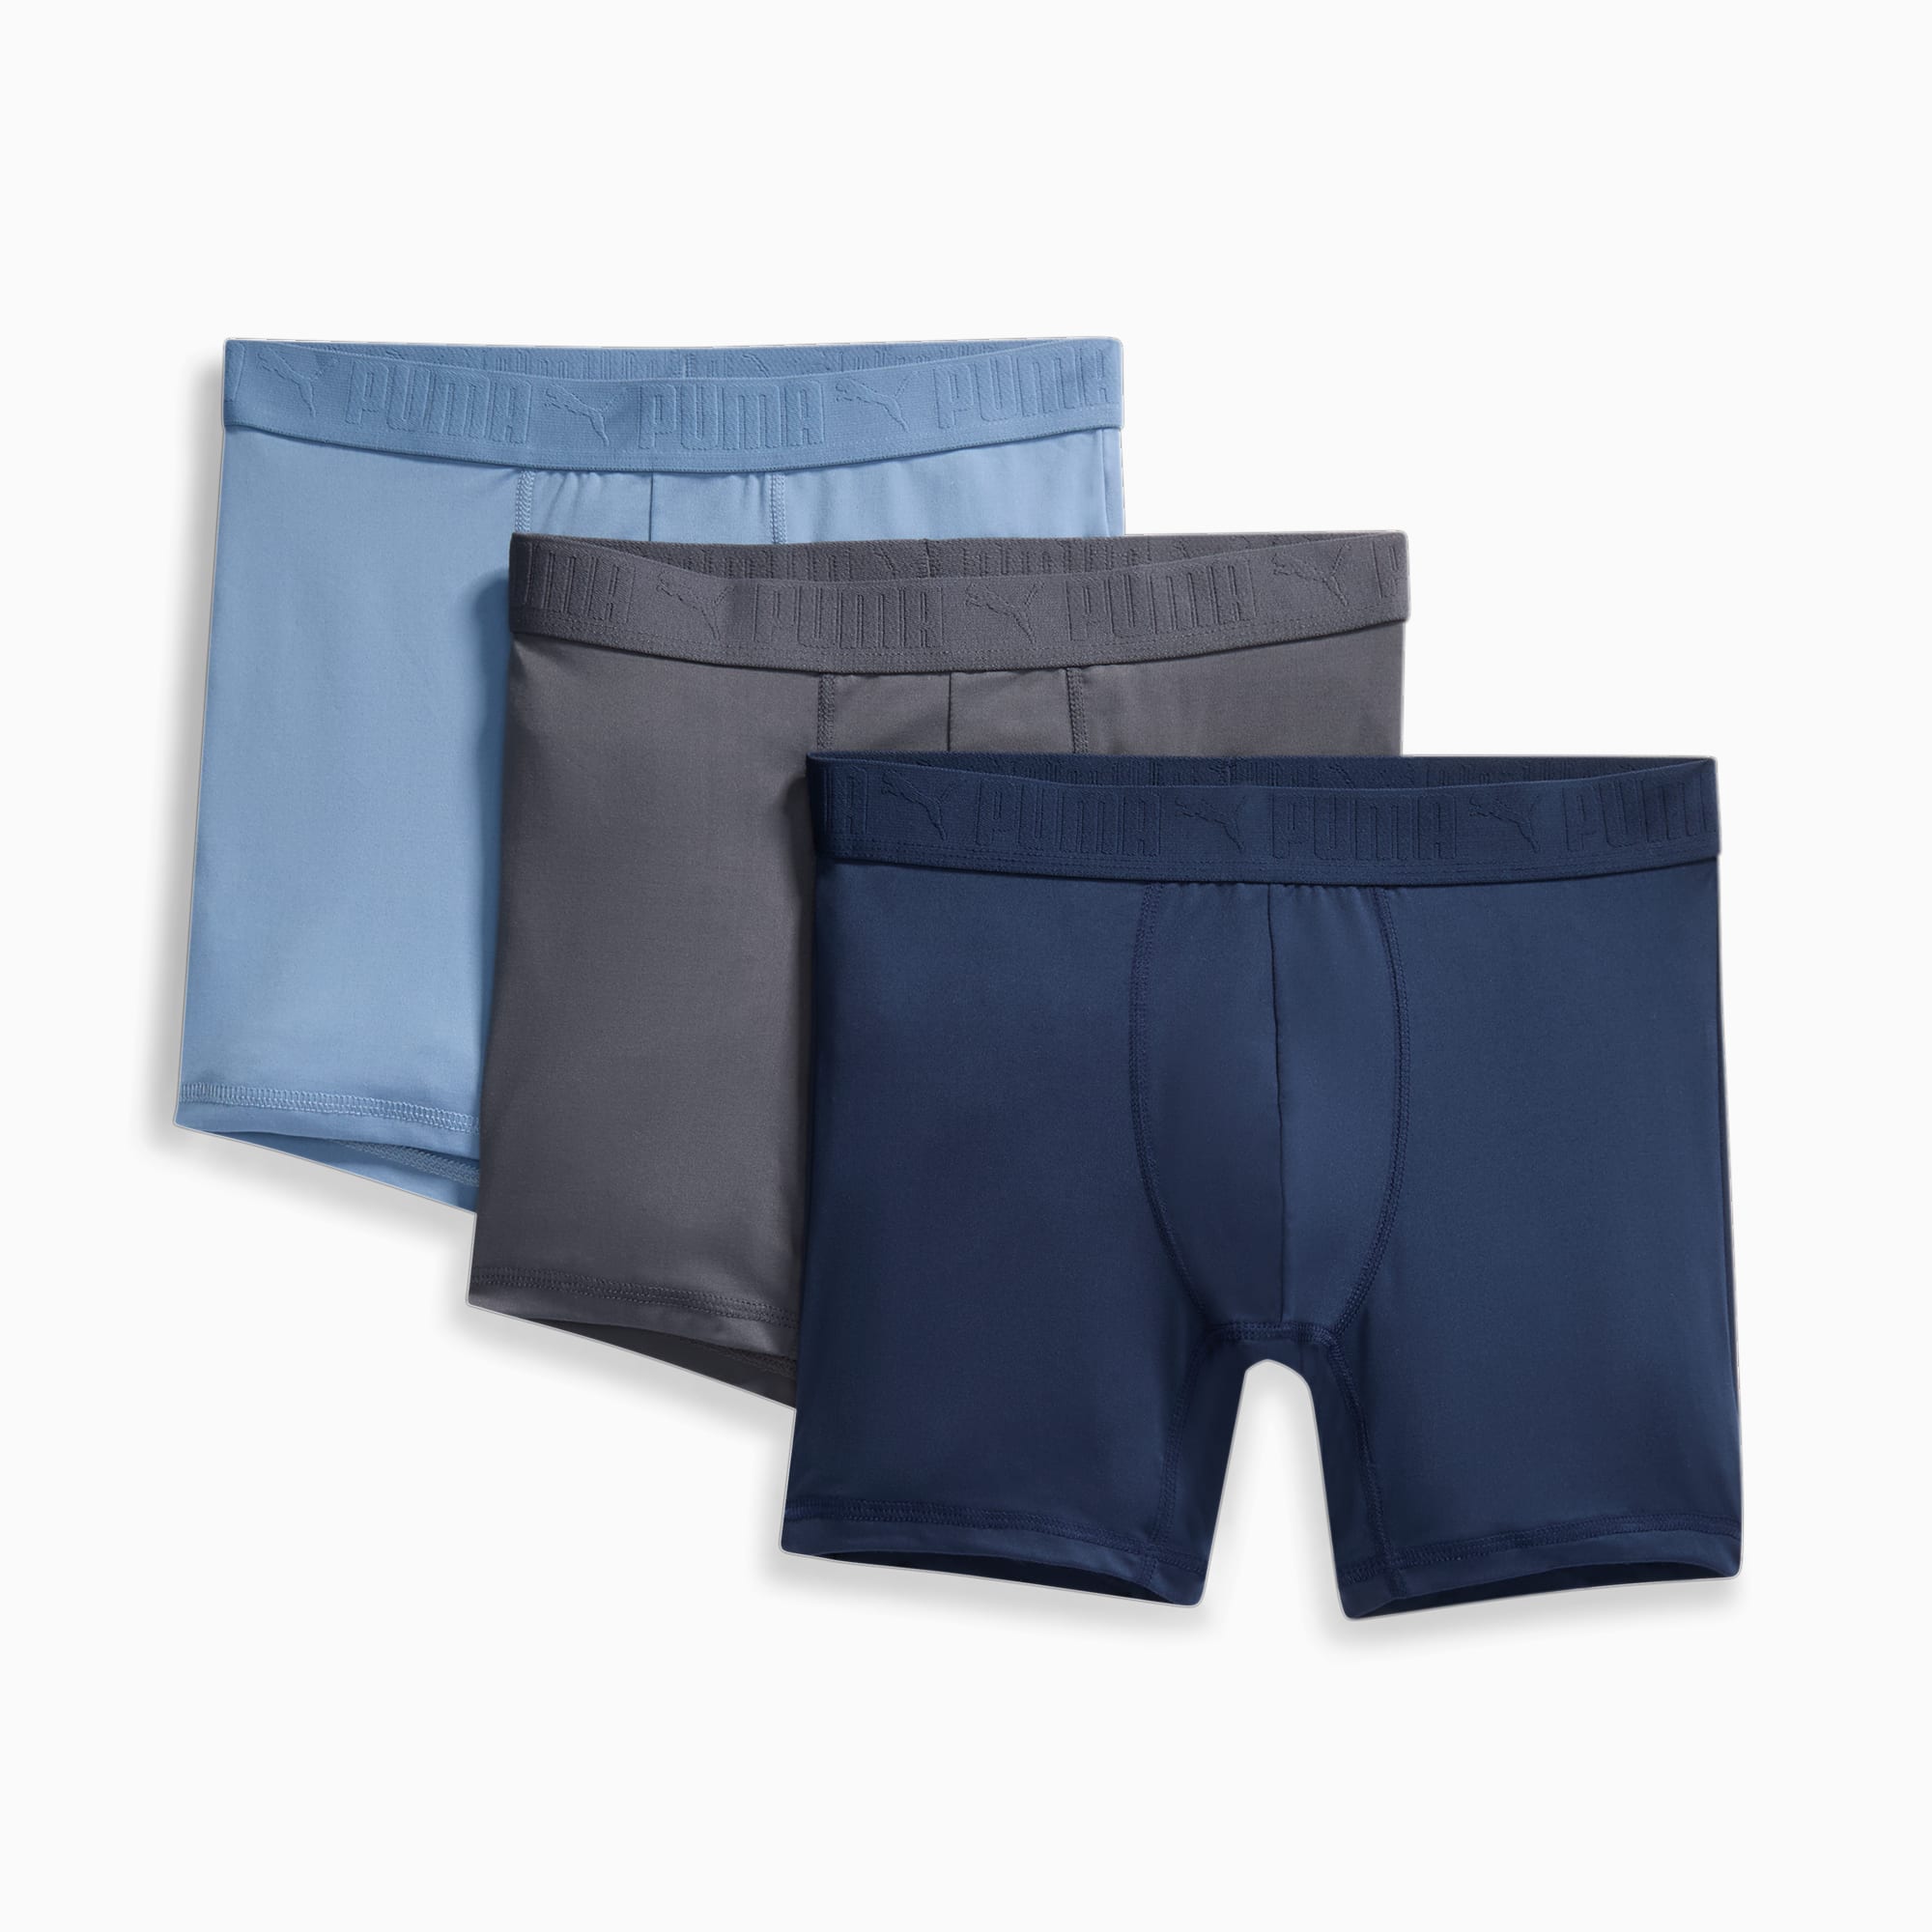 3-pack of blue cotton boxer shorts - Men